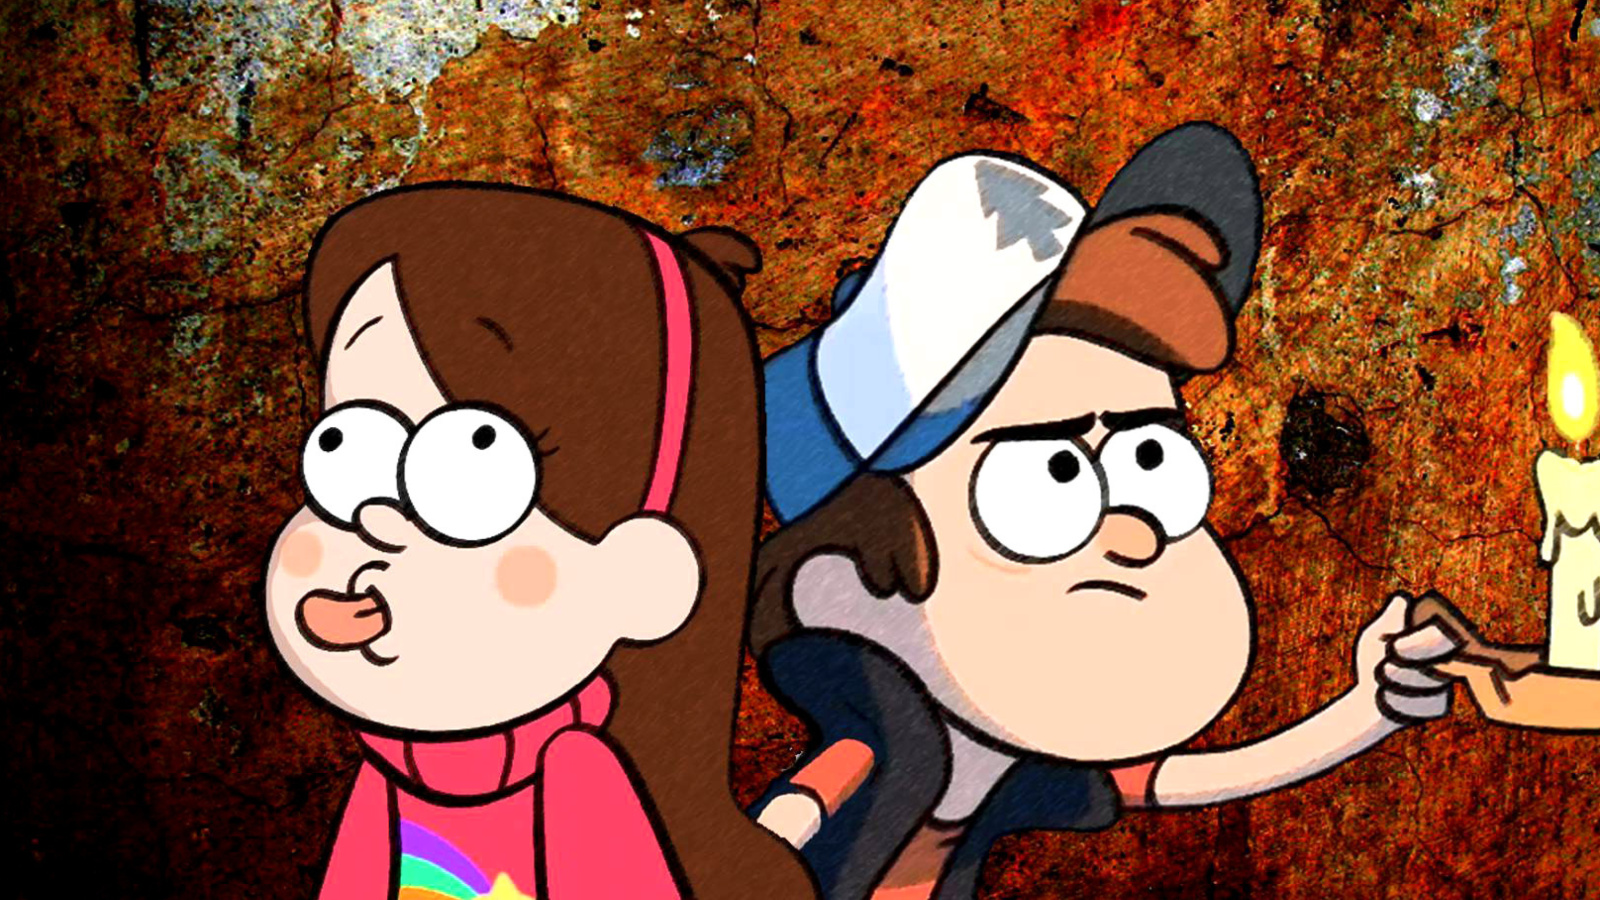 Mabel and Dipper in Gravity Falls wallpaper 1600x900